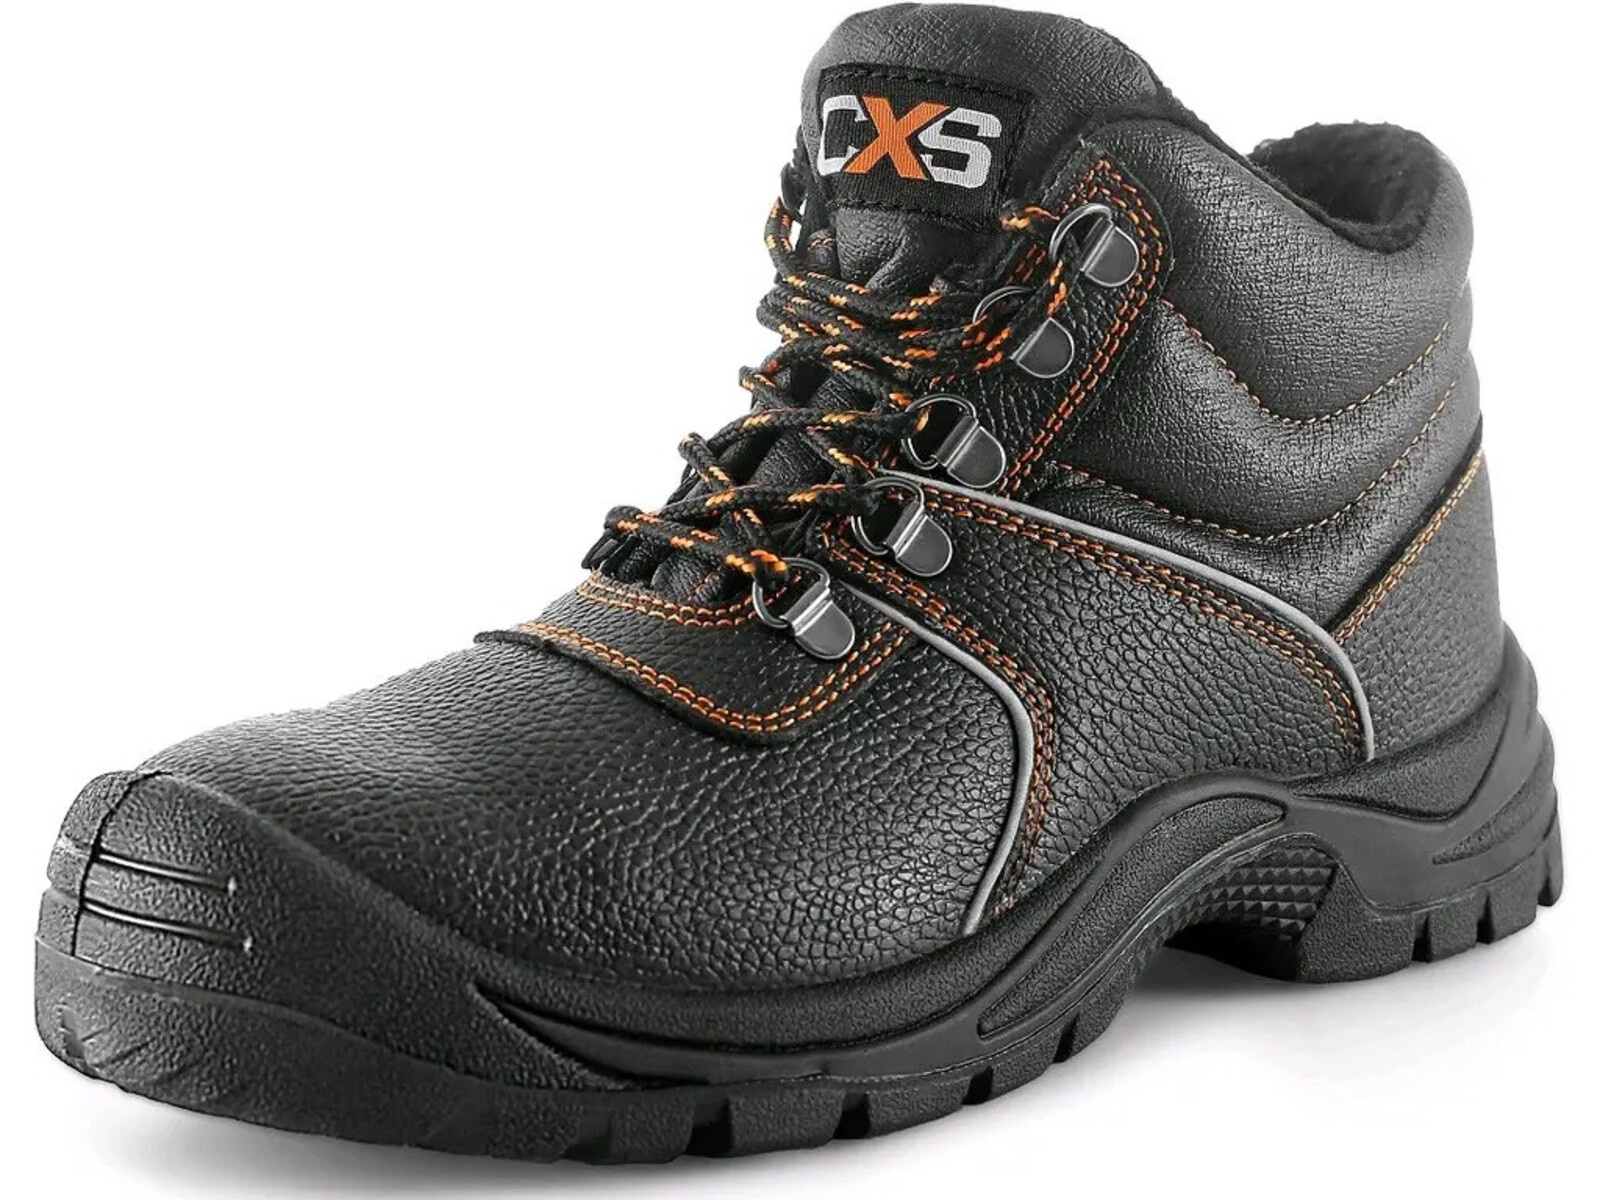 Zimná bezpečnostná členková obuv CXS Stone Apatit Winter S3 SRC - veľkosť: 41, farba: čierna/oranžová